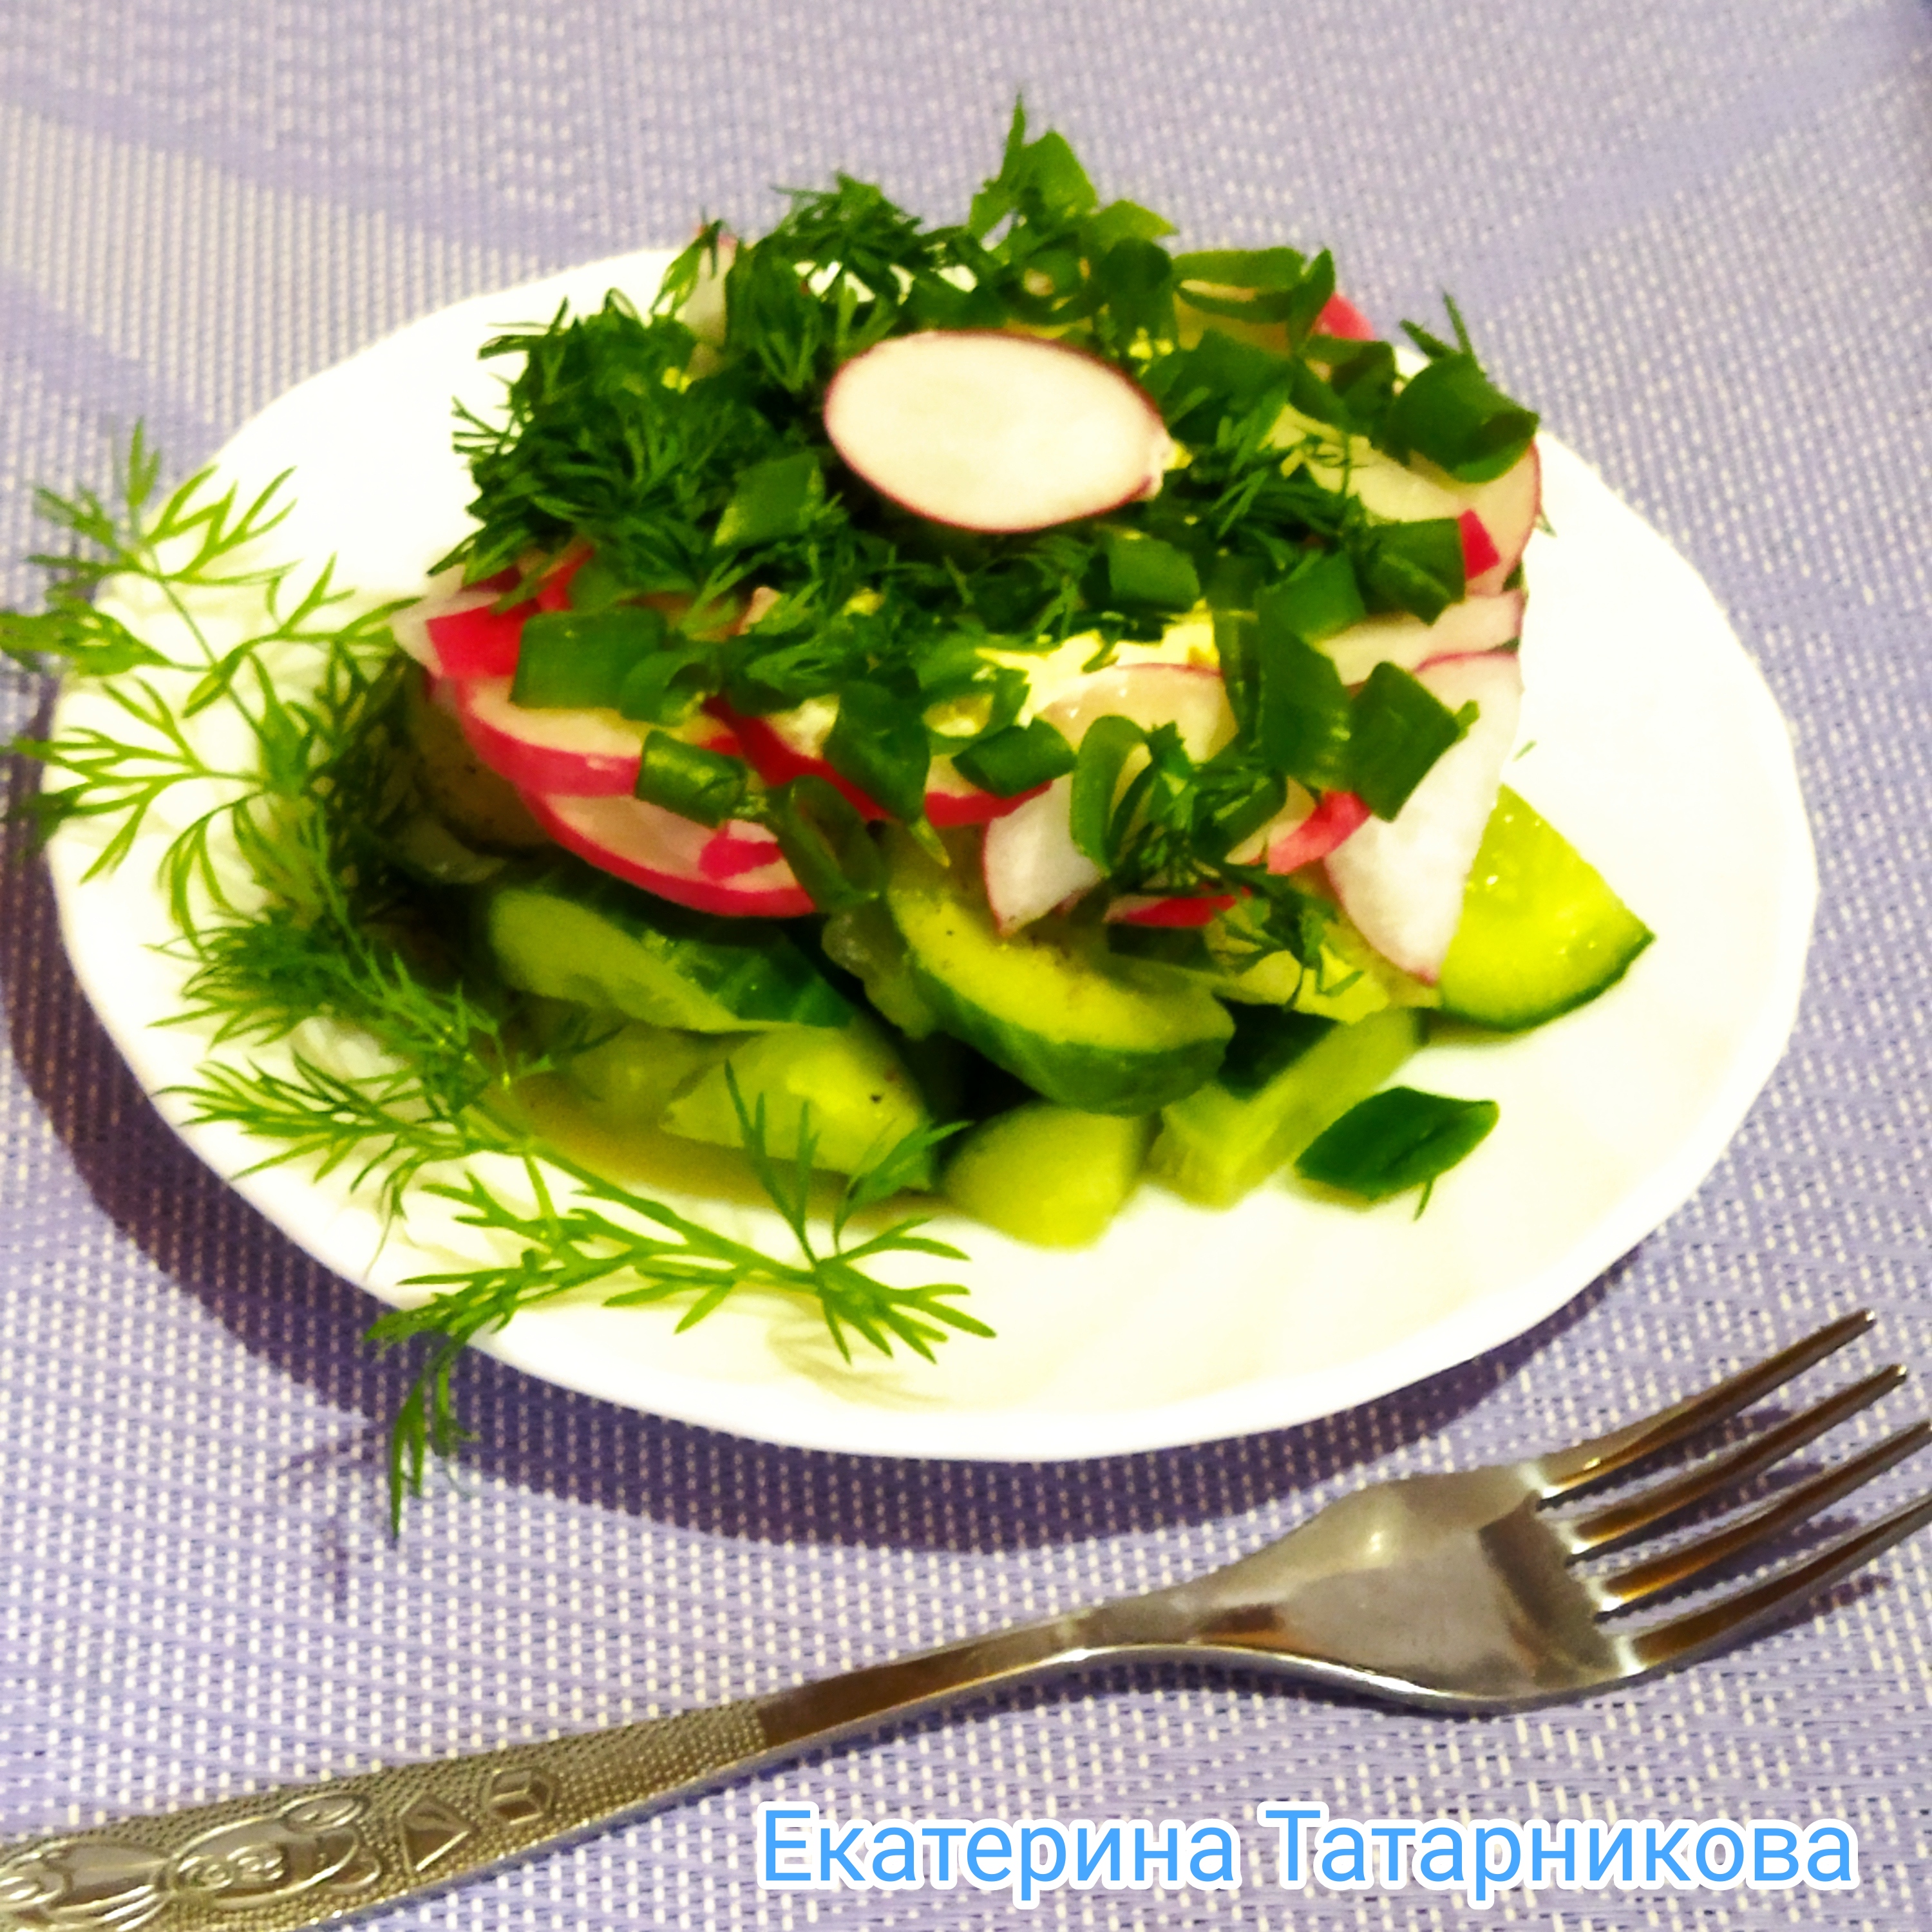 Салат из весенней зелени с батуном